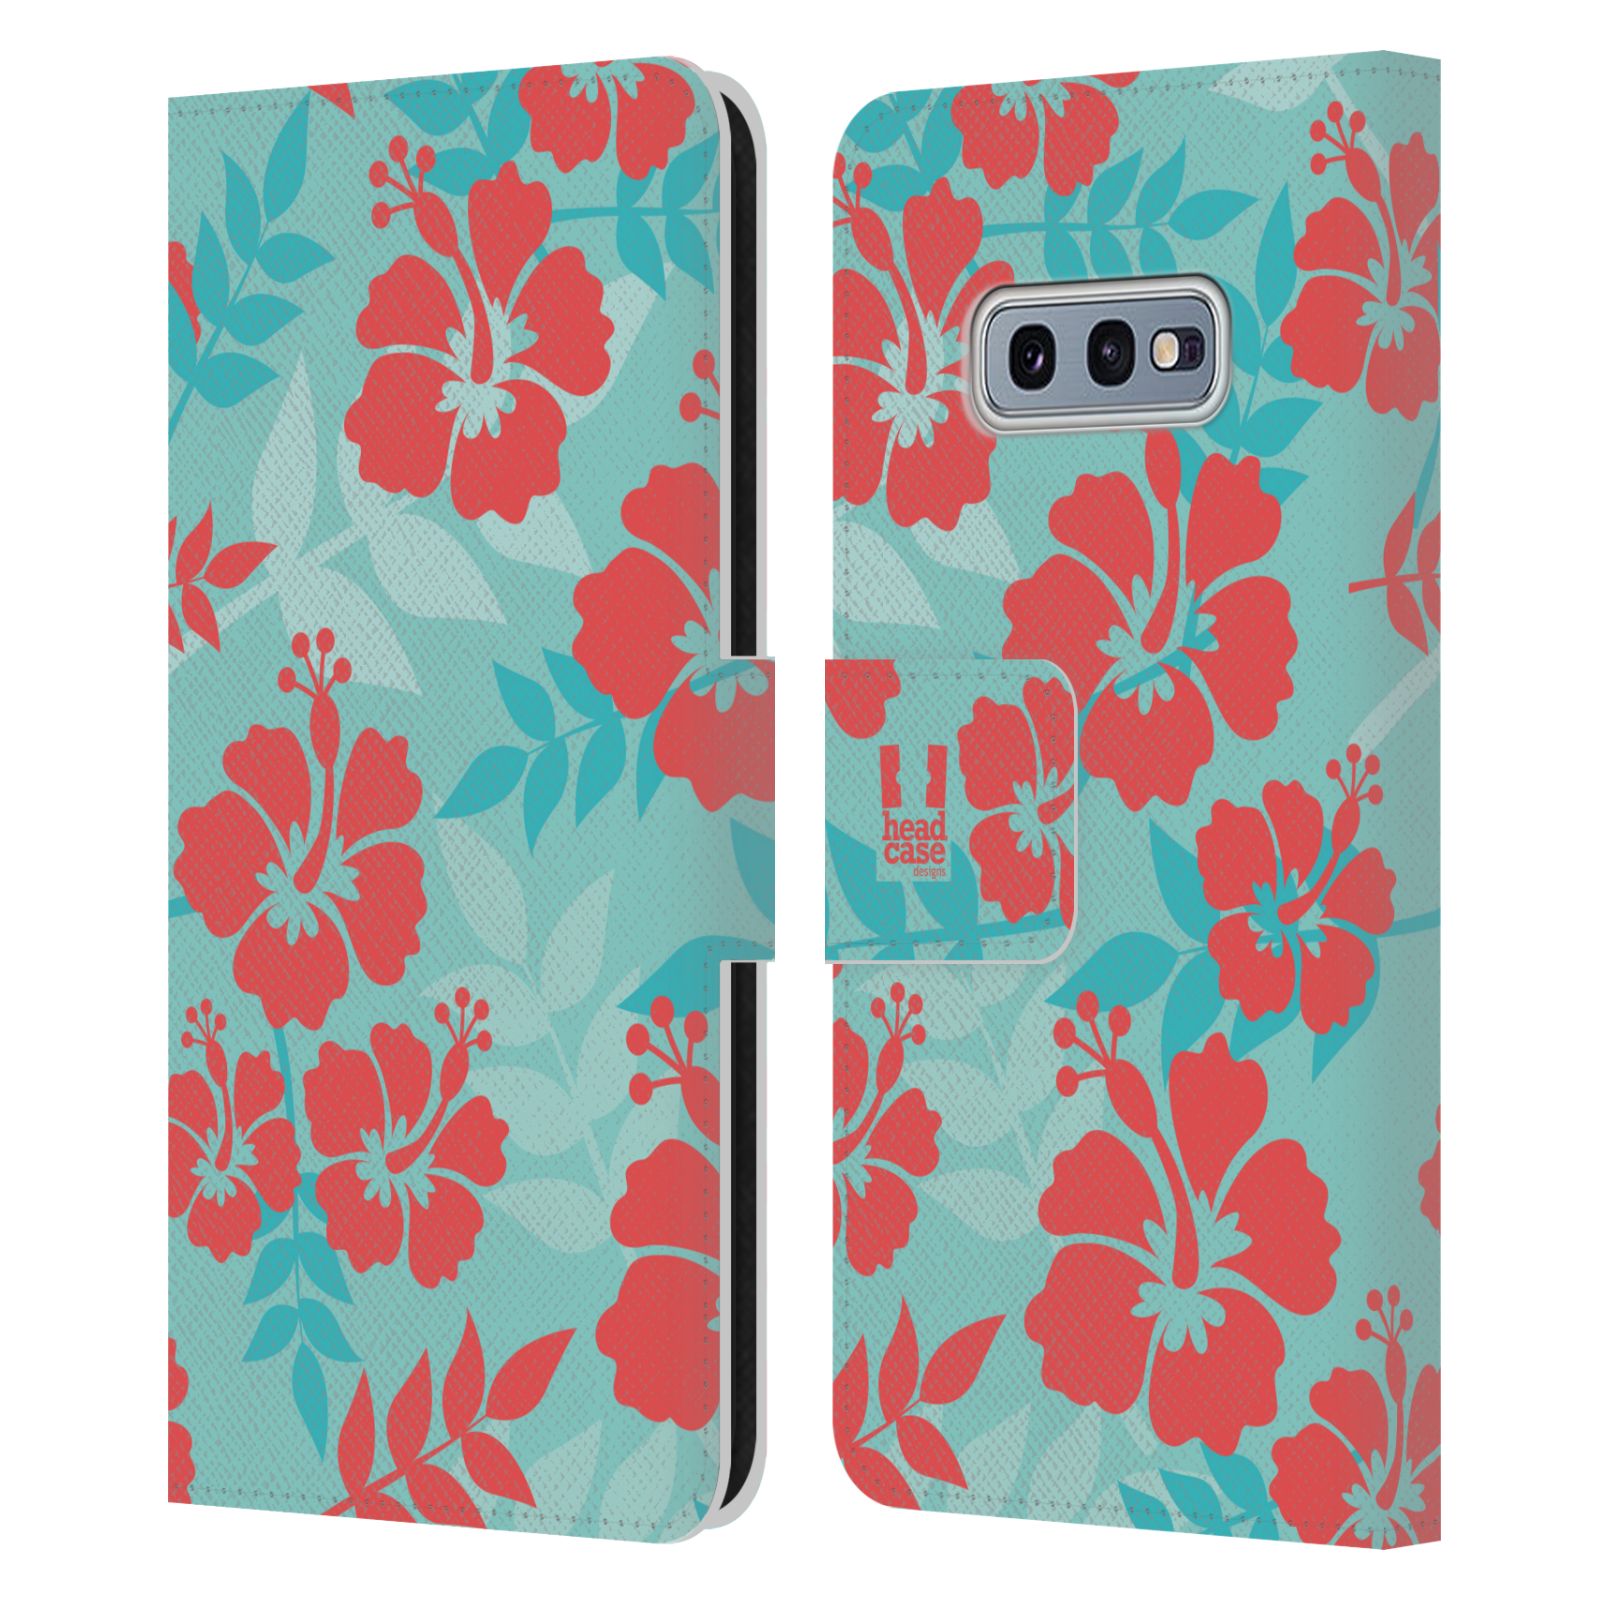 Pouzdro HEAD CASE na mobil Samsung Galaxy S10e Havajský vzor Ibišek květ modrá a růžová